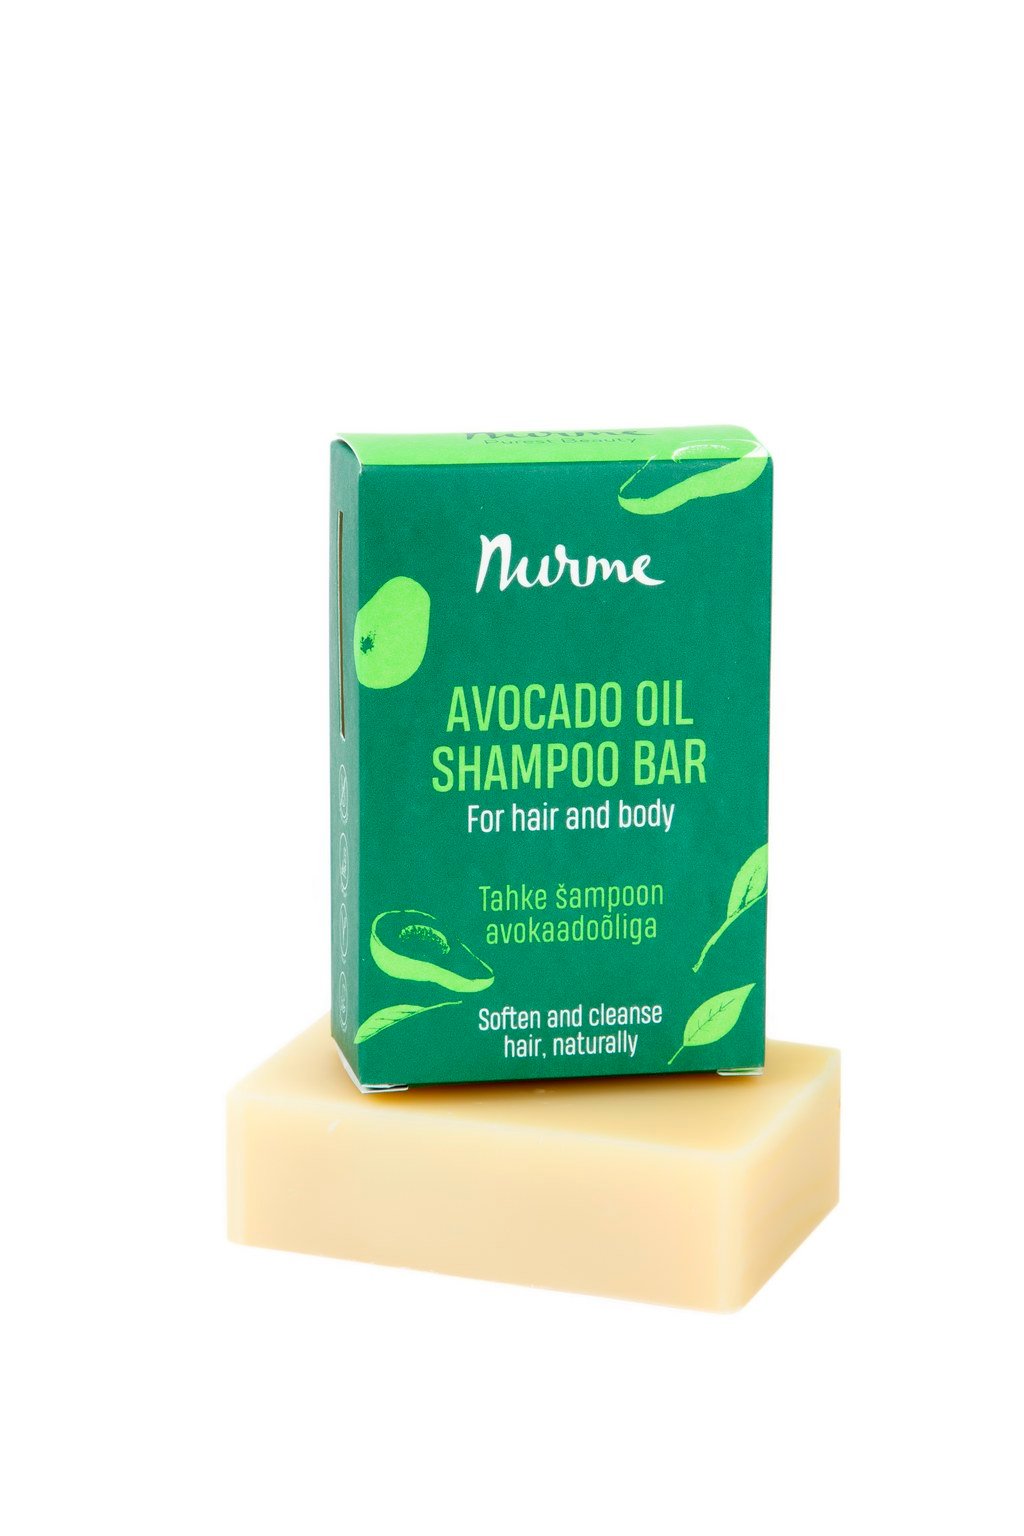 Nurme Avocado Oil Shampoo Bar 100g